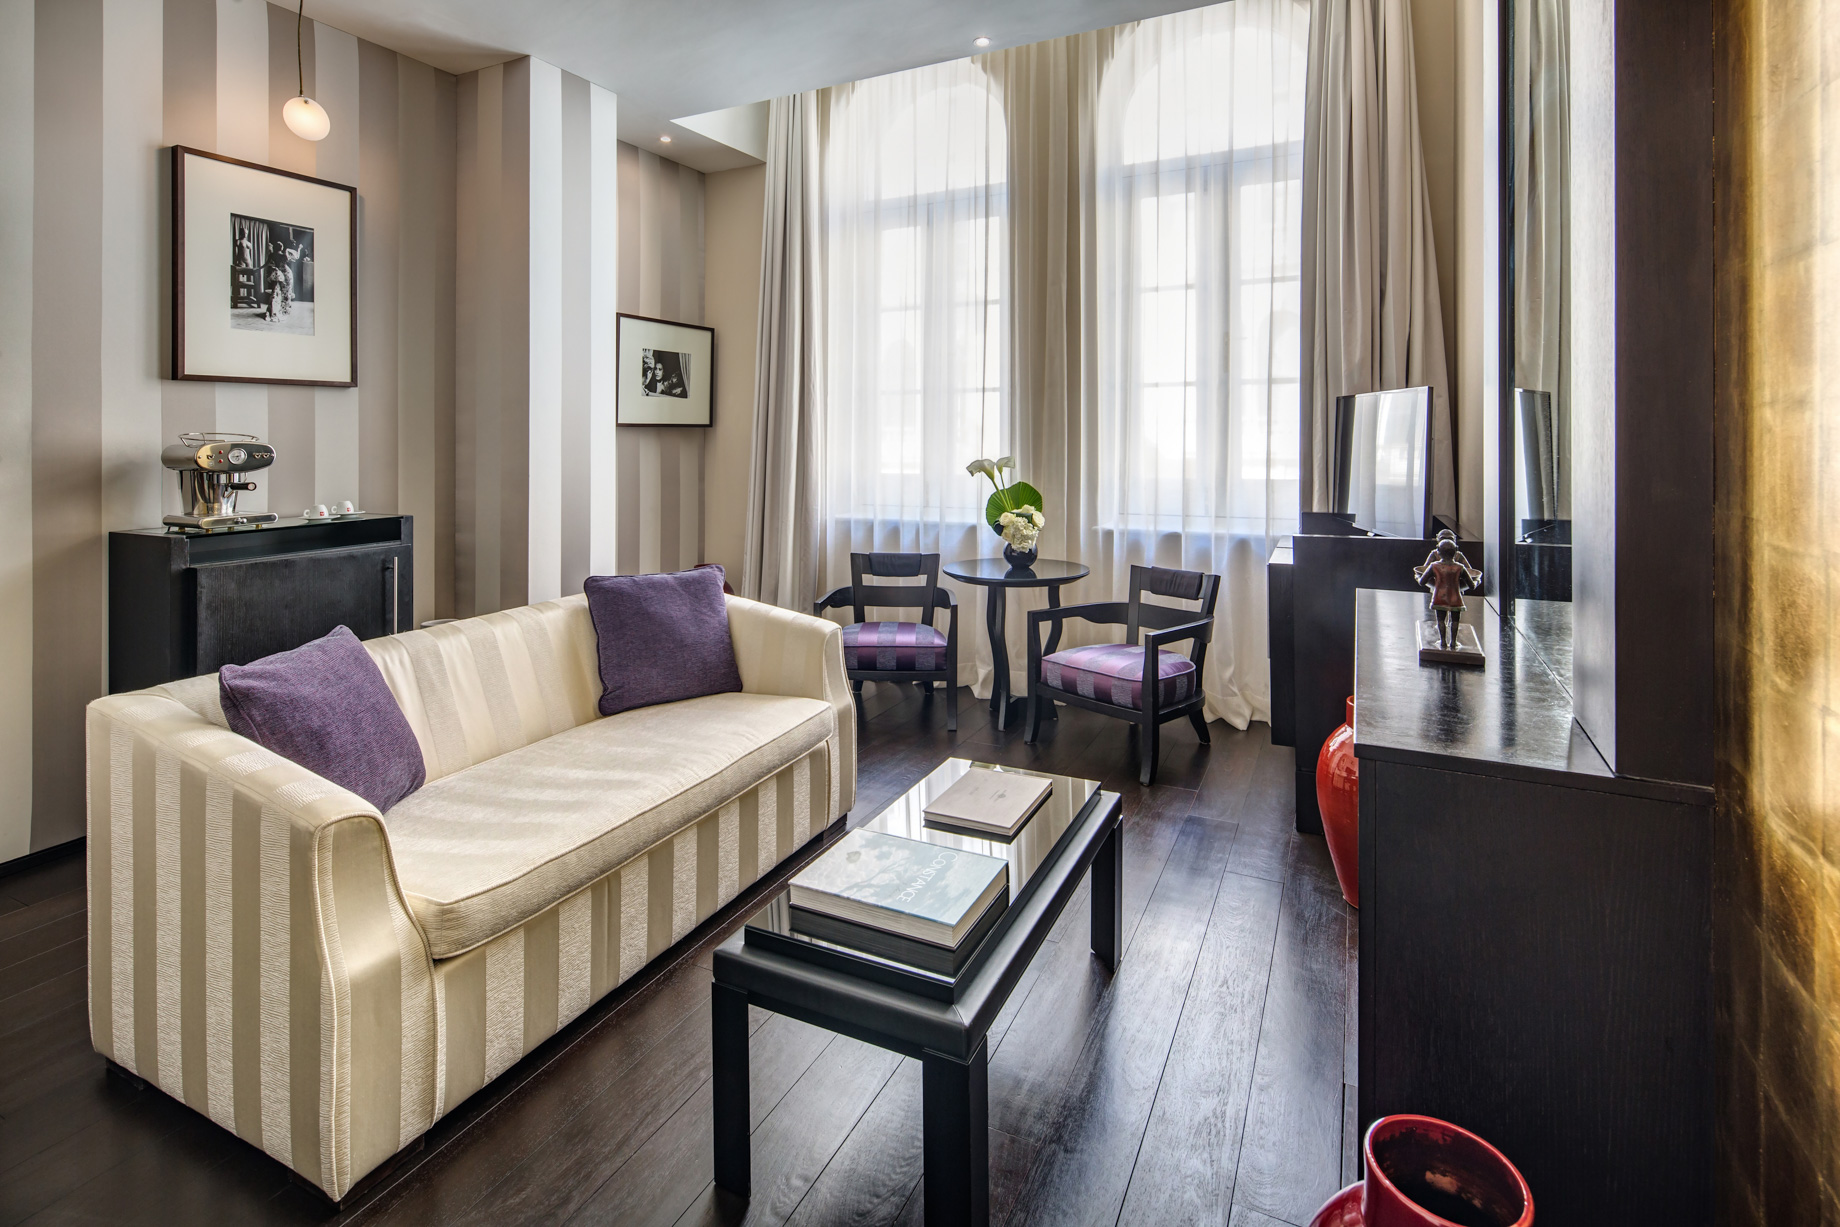 Baglioni Hotel London – South Kensington, London, United Kingdom – De Vere Suite